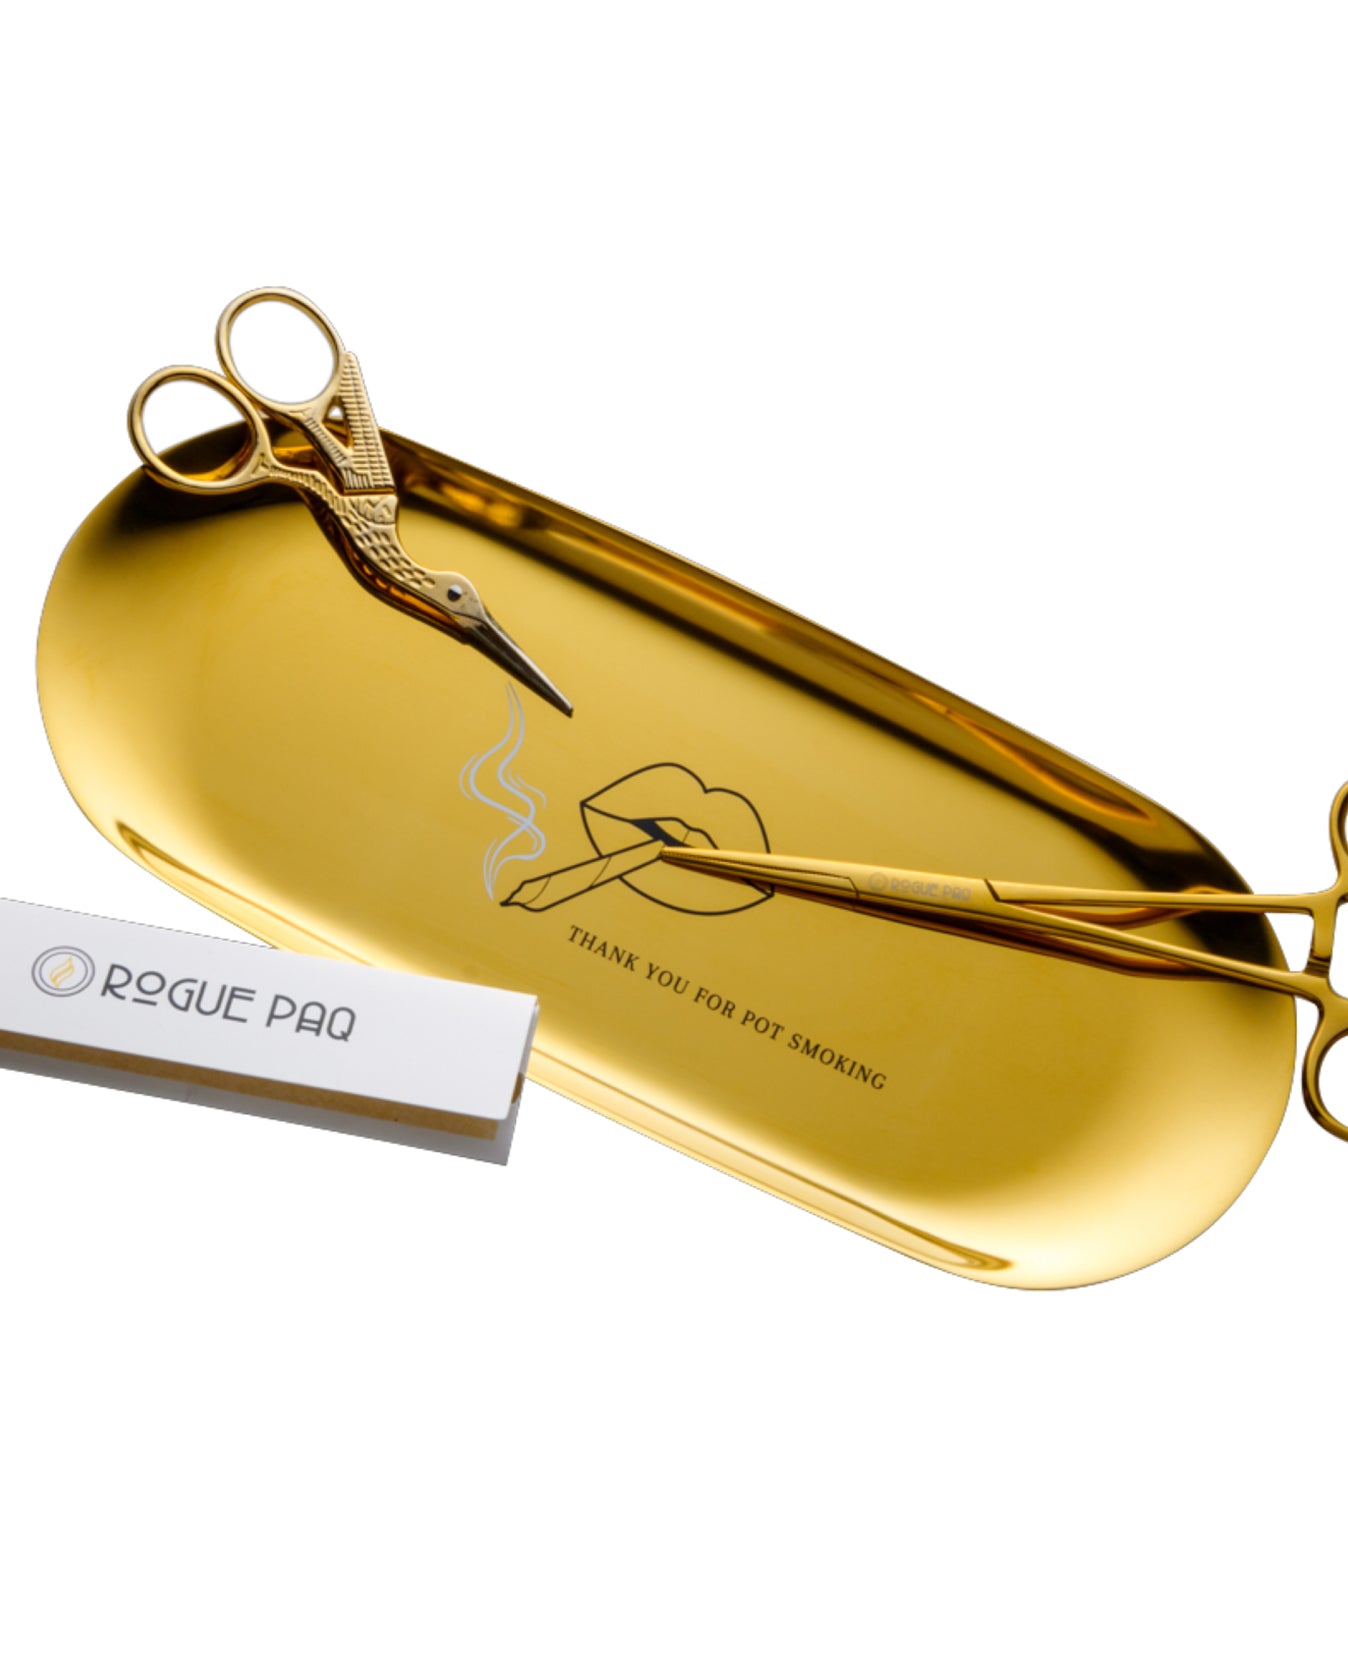 Rogue Paq Eiffel Tower Gold-Tone Bud Trimming Scissors